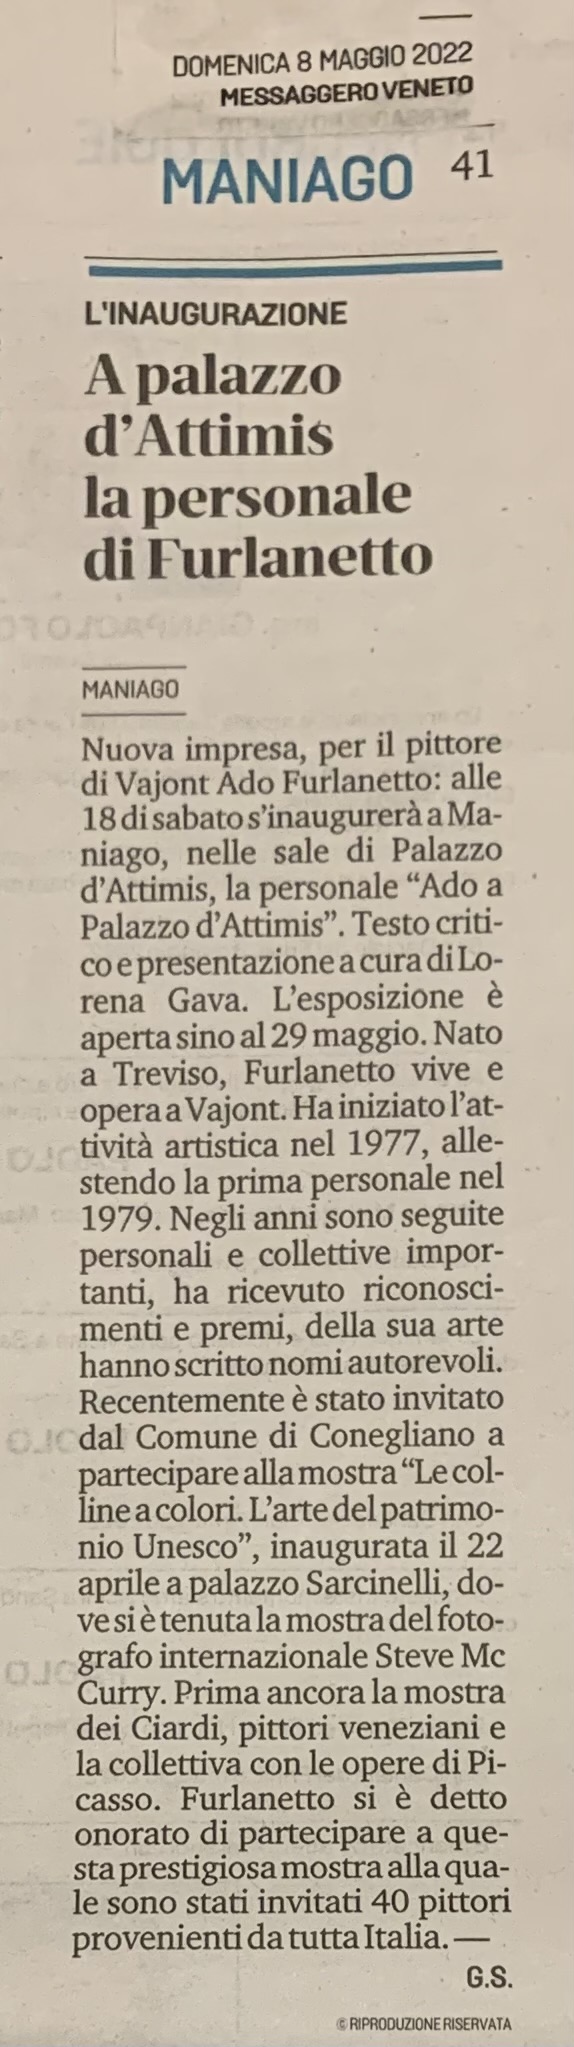 Personale “ Ado Furlanetto a Palazzo d’Attimis” - Maniago. 14/5 - 29/5 2022